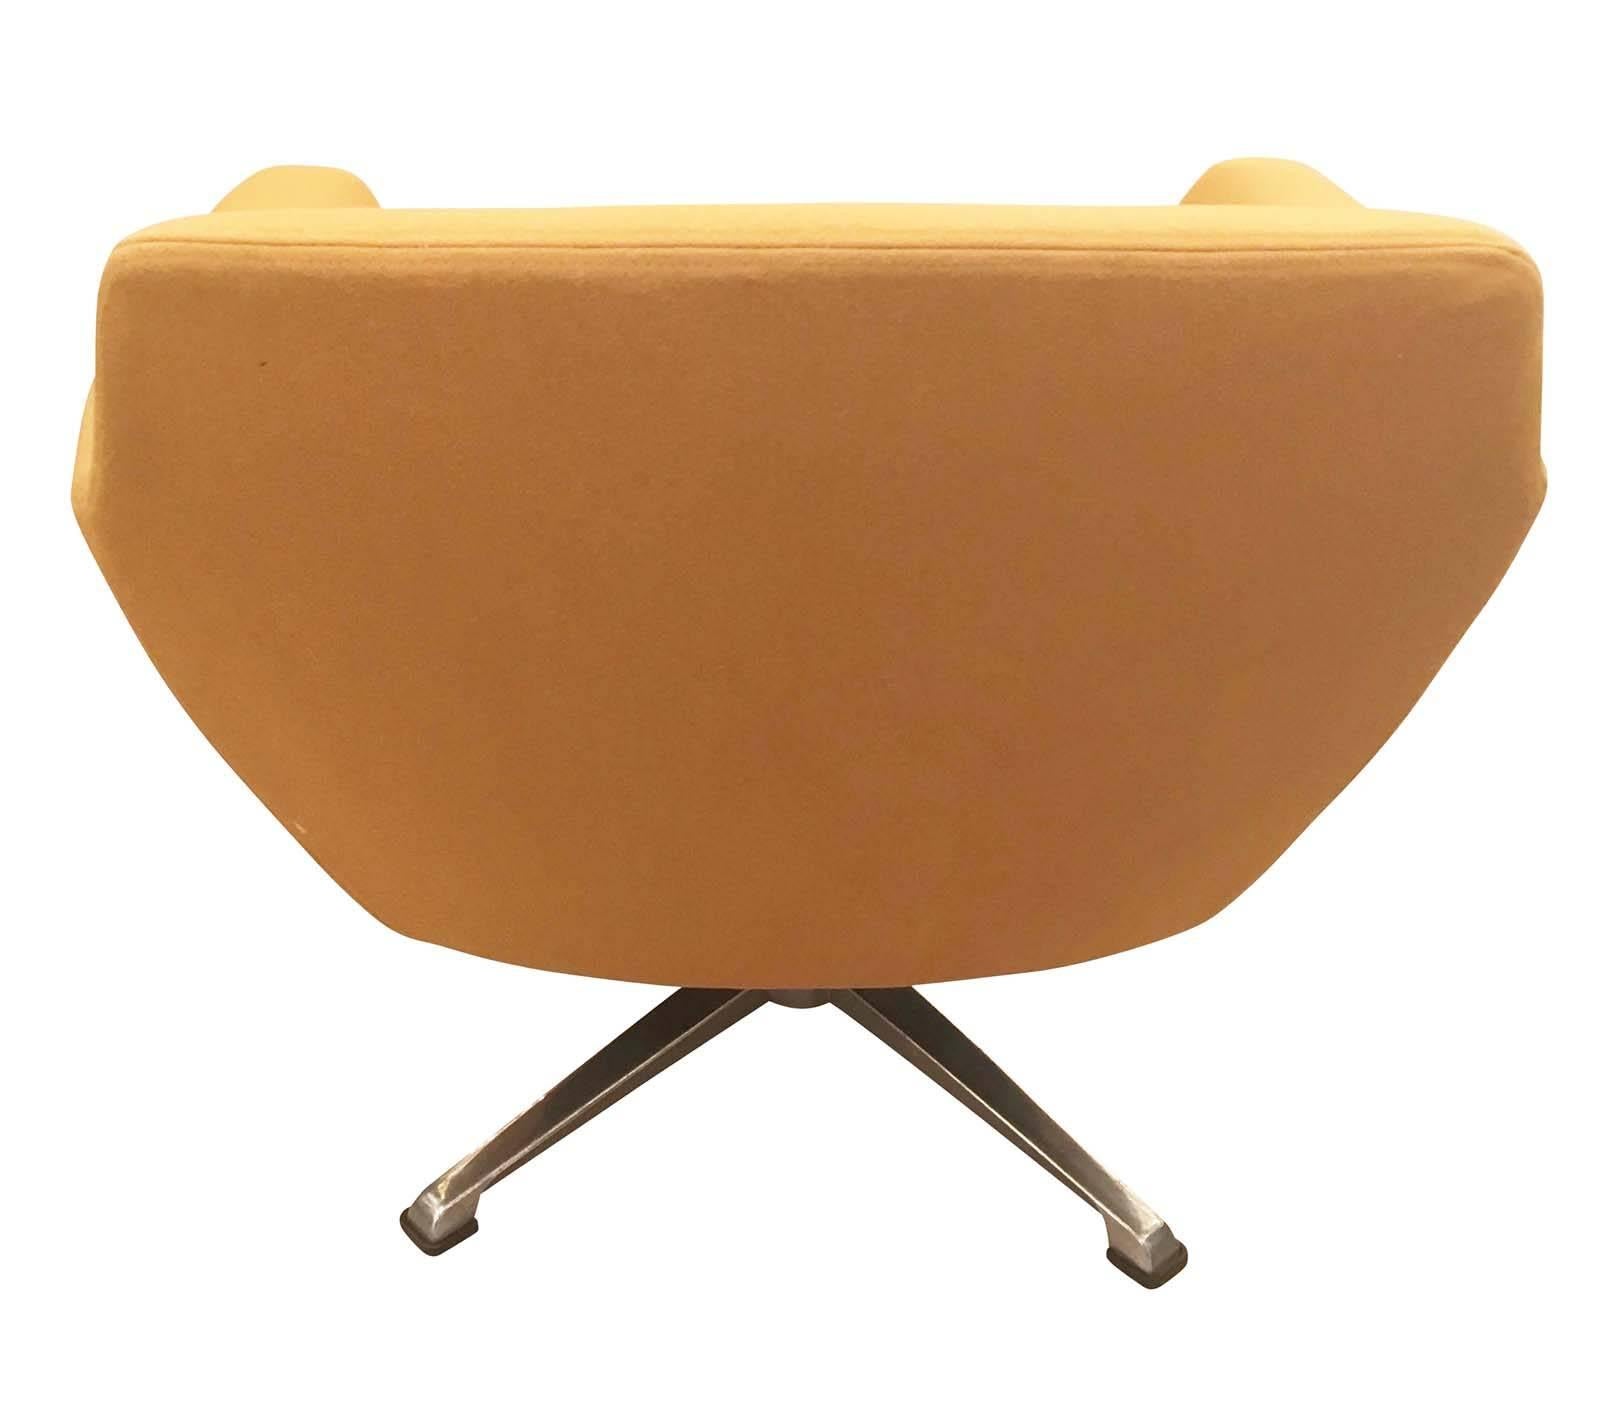 Mid-20th Century Italian Mid-Century Swivel Chair